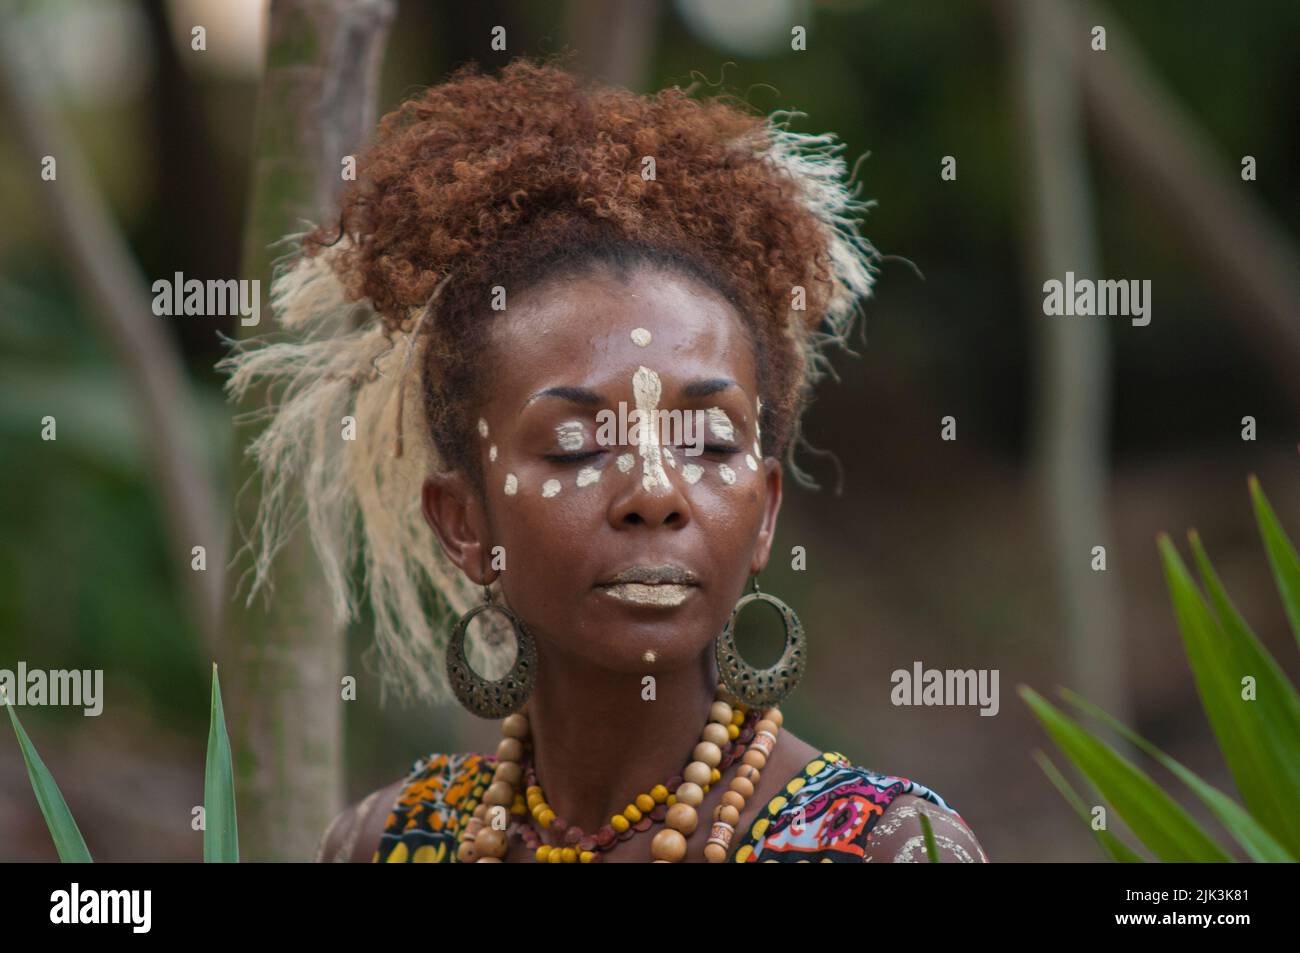 Primer plano de una joven indígena brasileña durante un evento tribal en la selva tropical Foto de stock